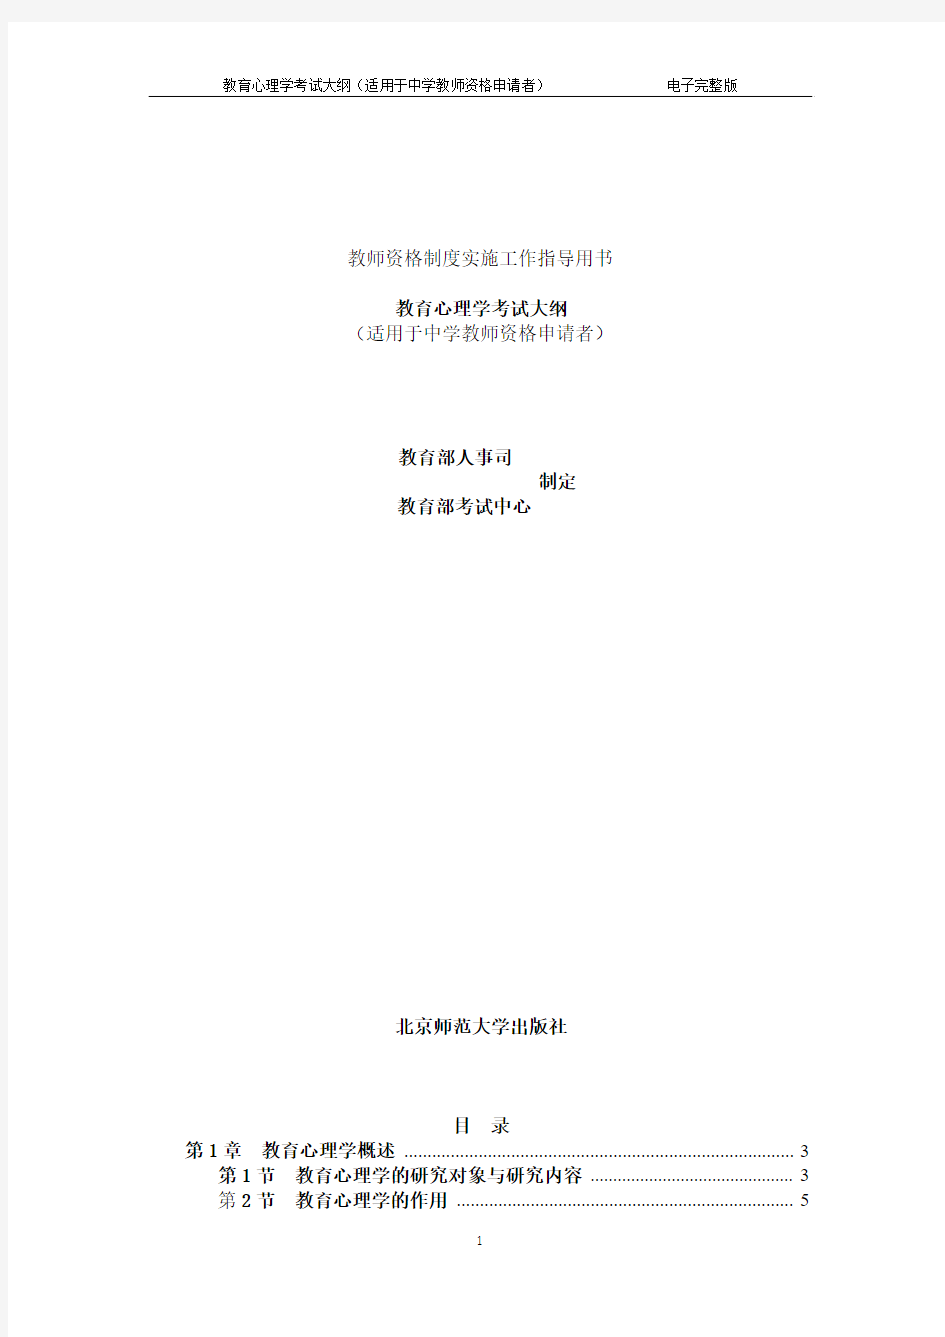 教育心理学考试大纲(中学)北京师范大学出版社电子完整版